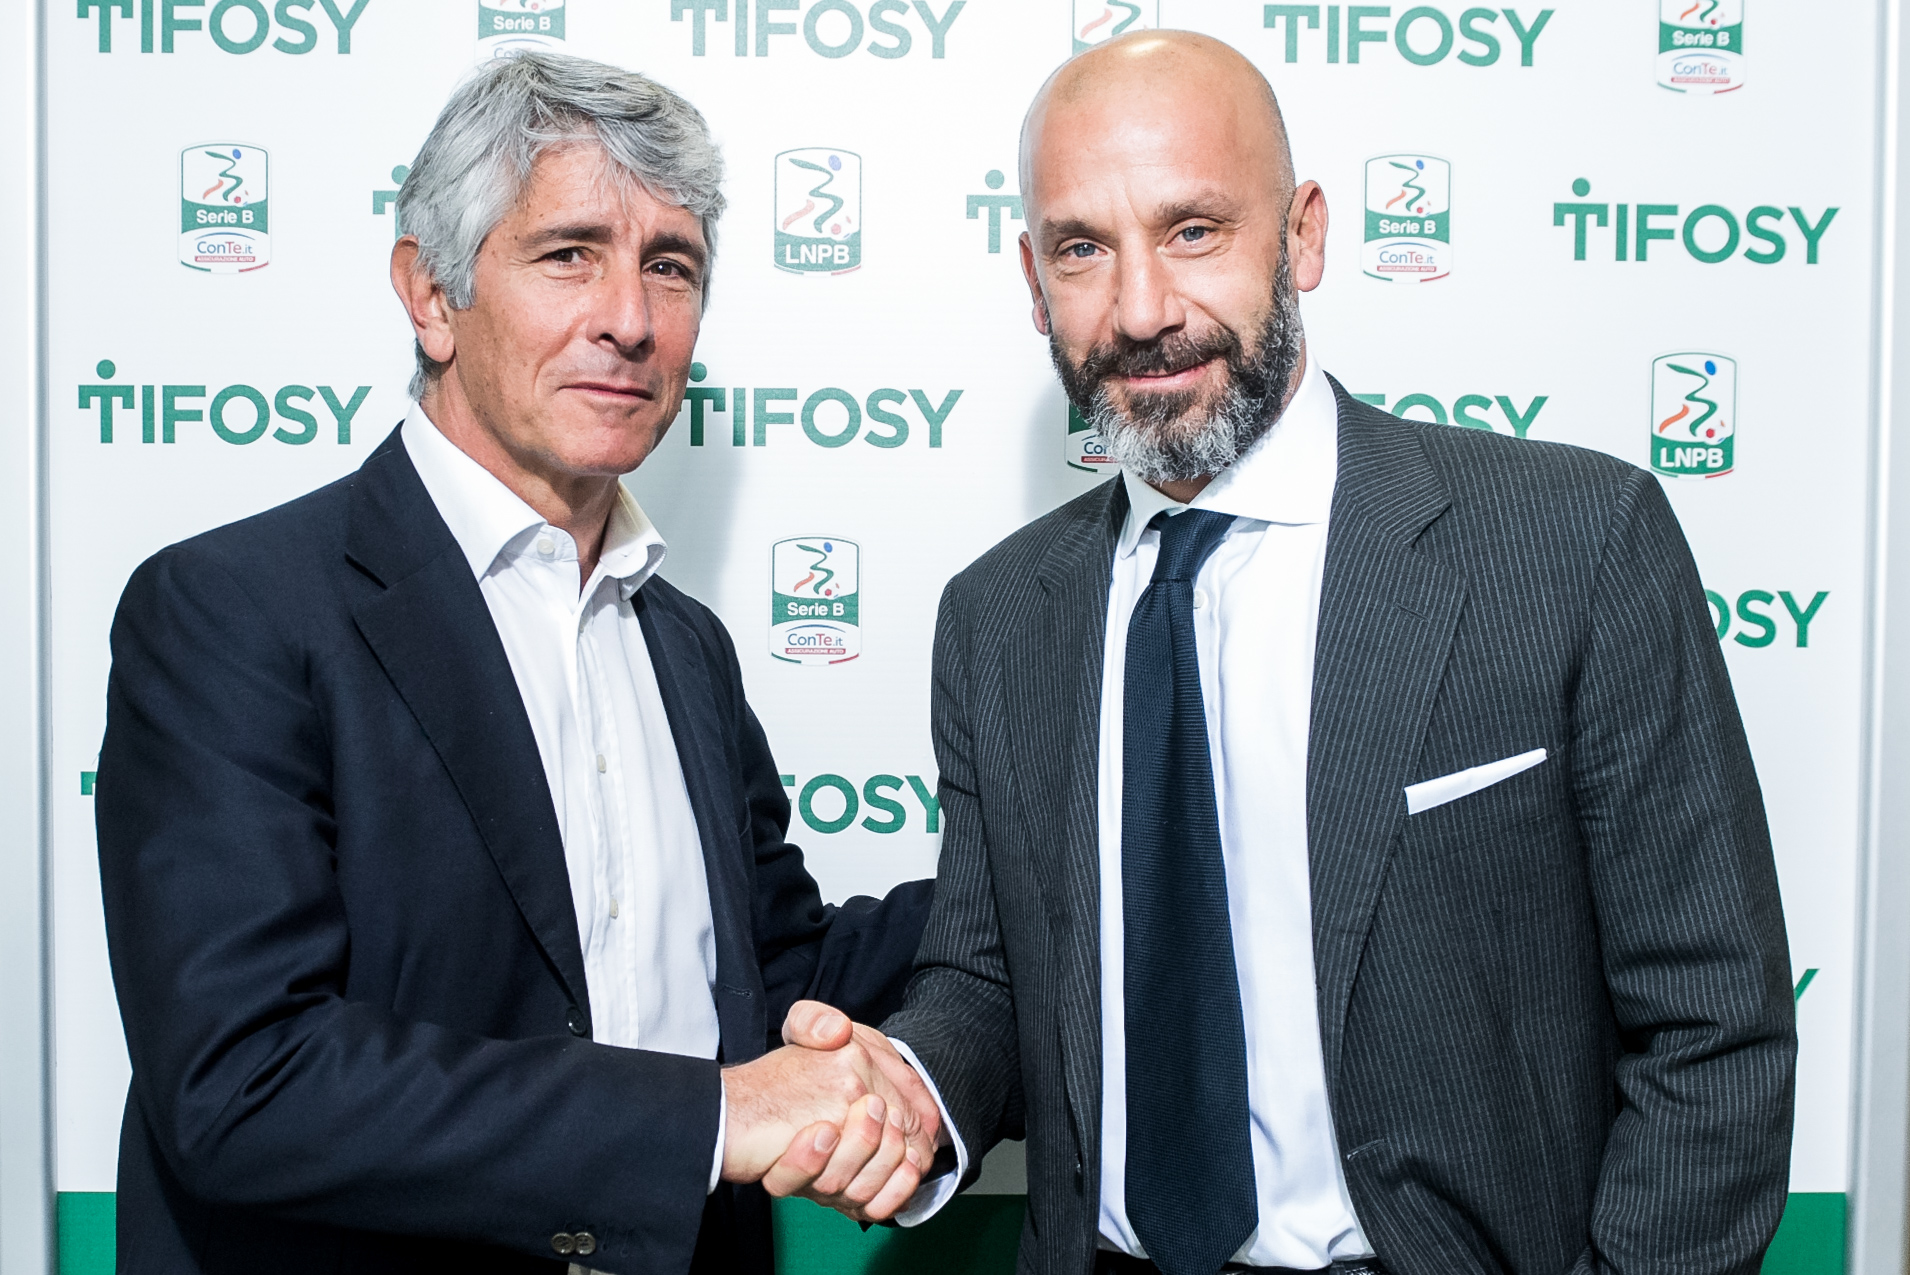 Serie B, arriva Tifosy: progetti condivisi per il futuro delle società